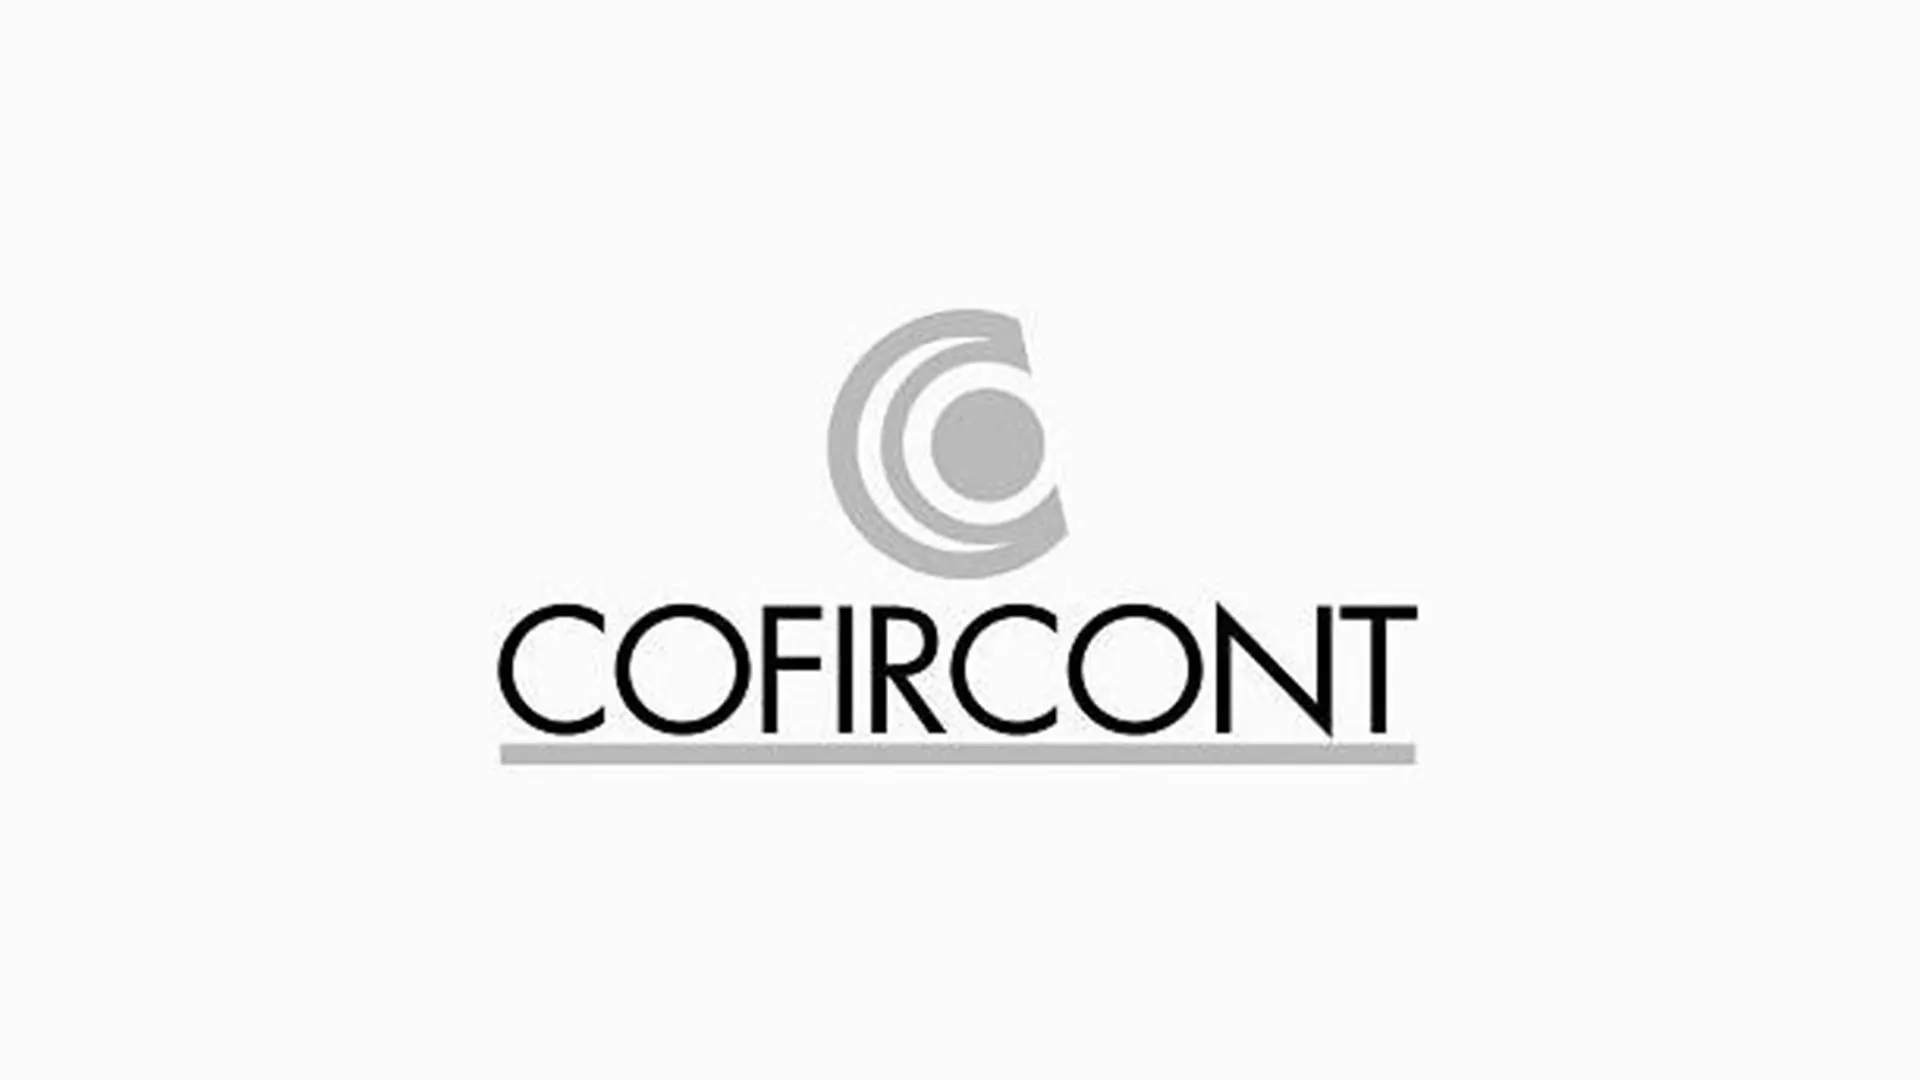 Cofircont